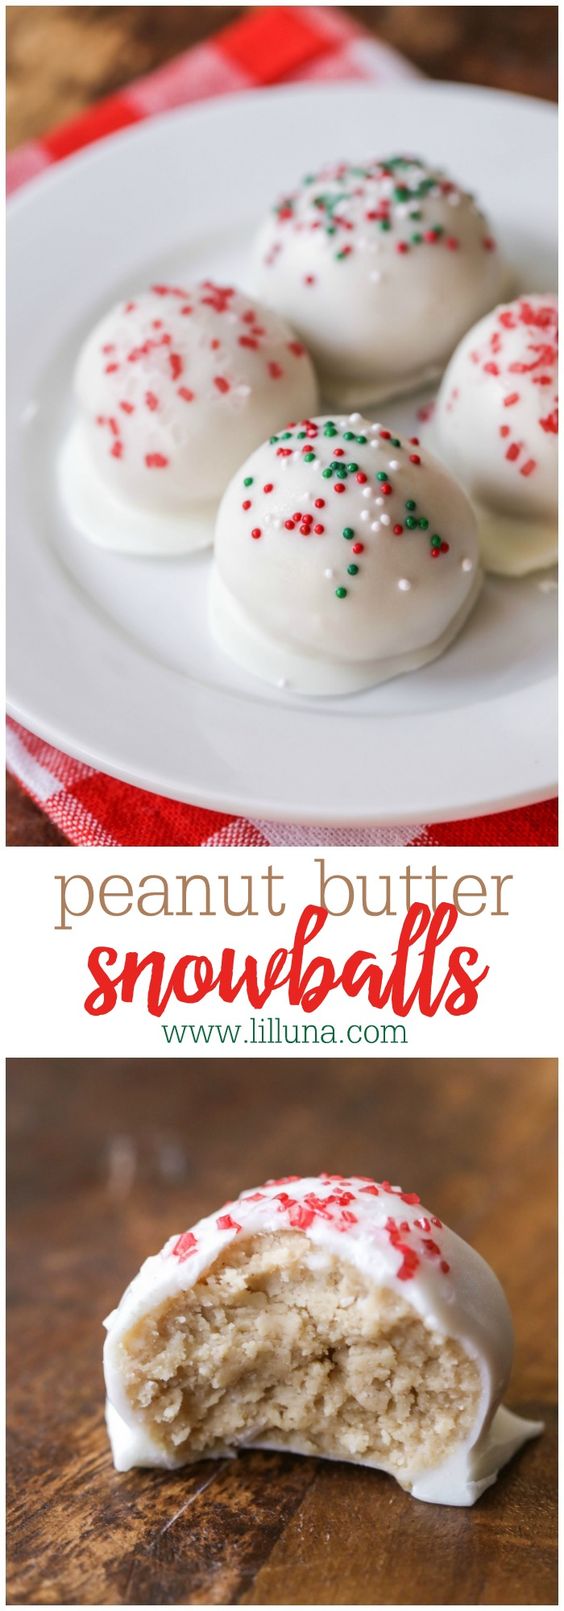 Christmas Cookies: Peanut Butter Snowballs